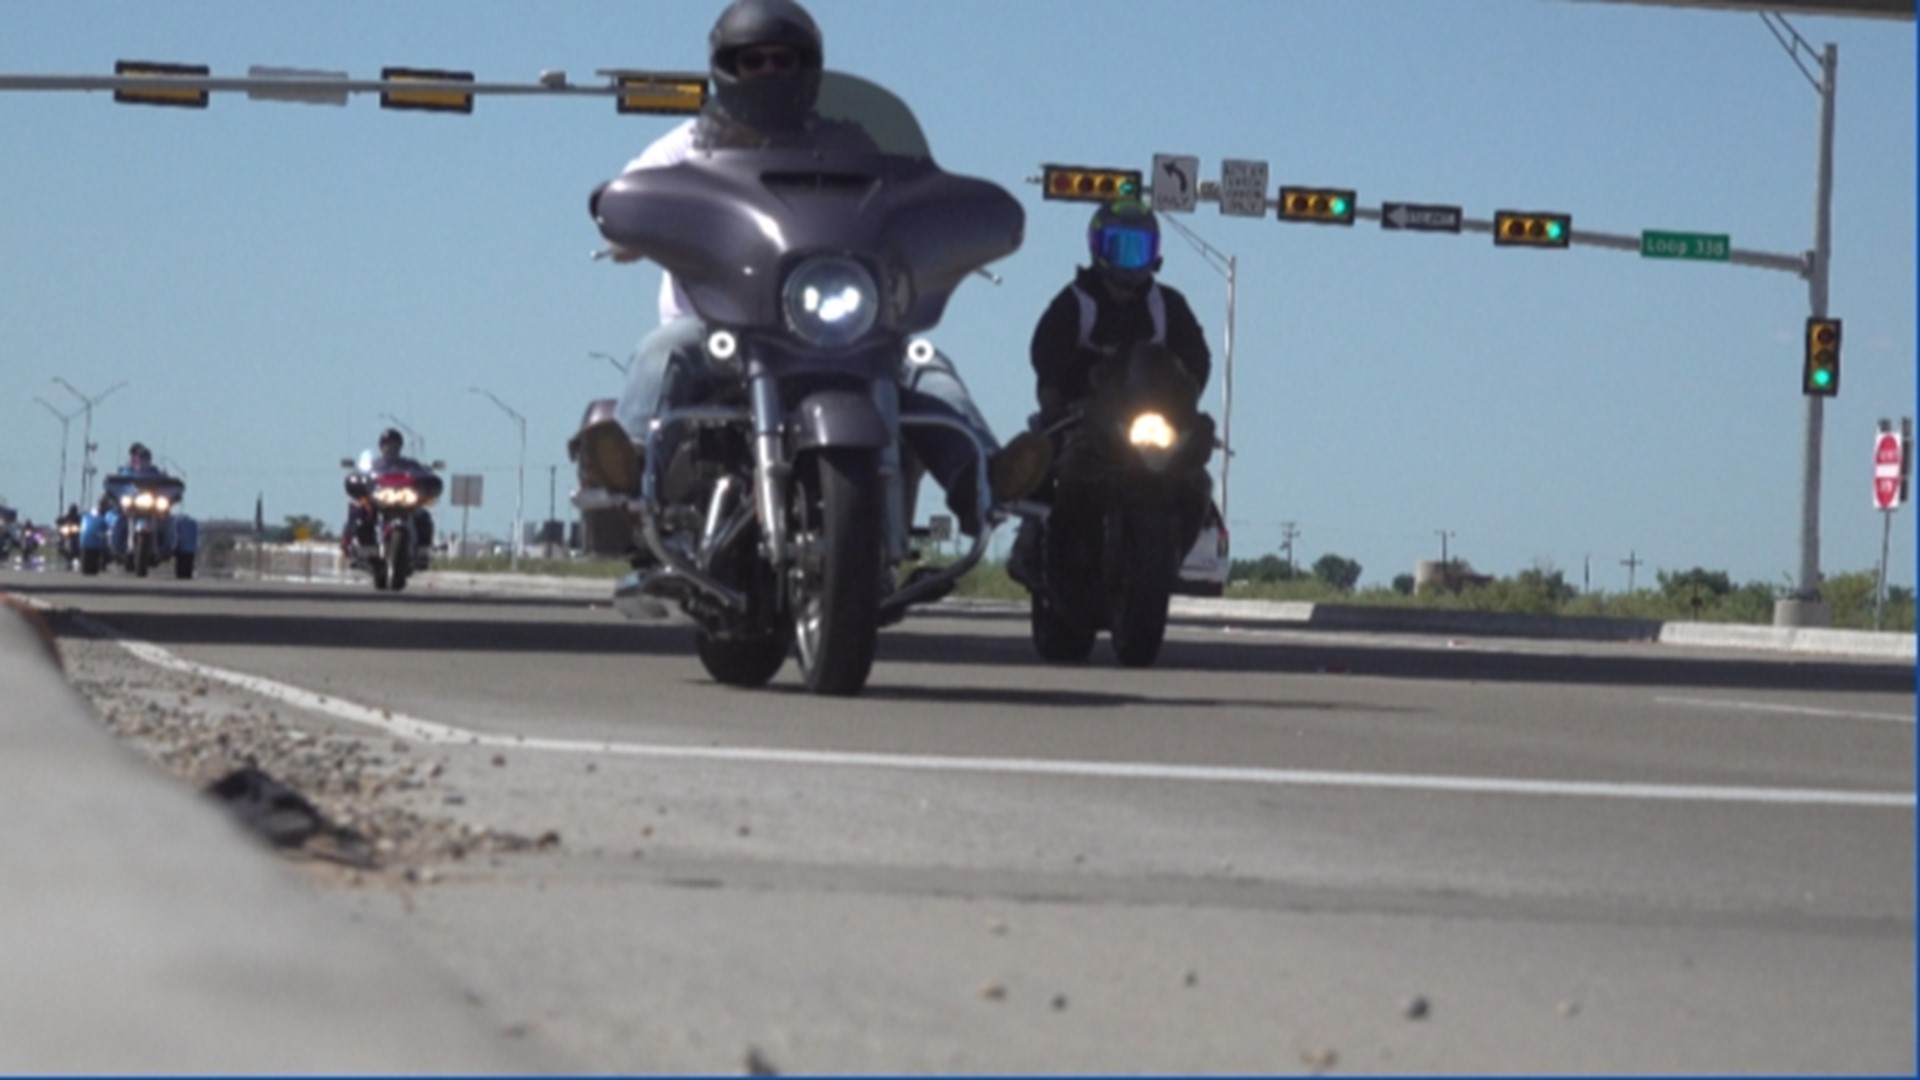 Over 400 bikers hit the road to help honor fallen troops.